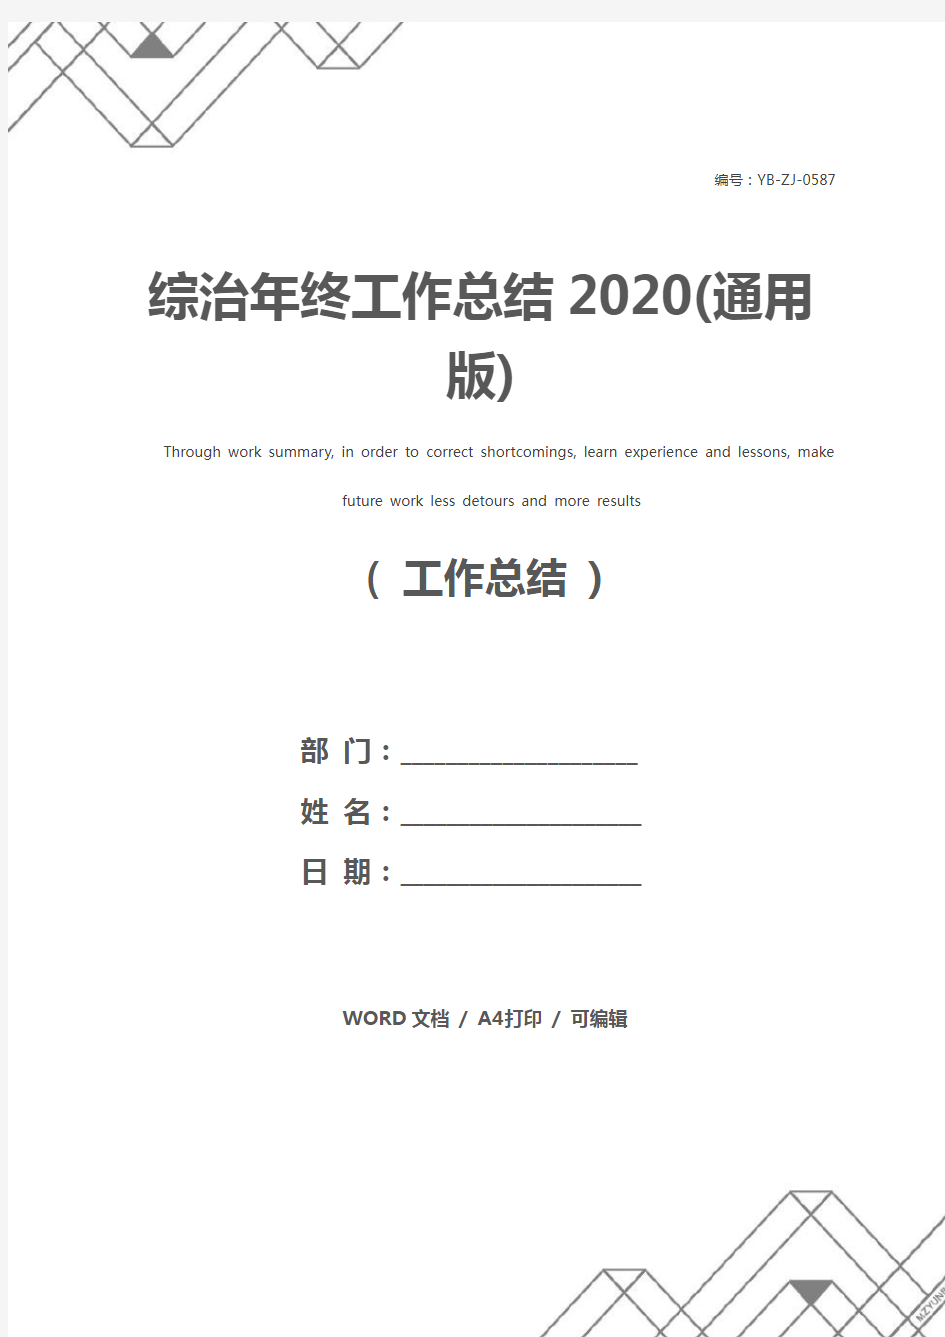 综治年终工作总结2020(通用版)